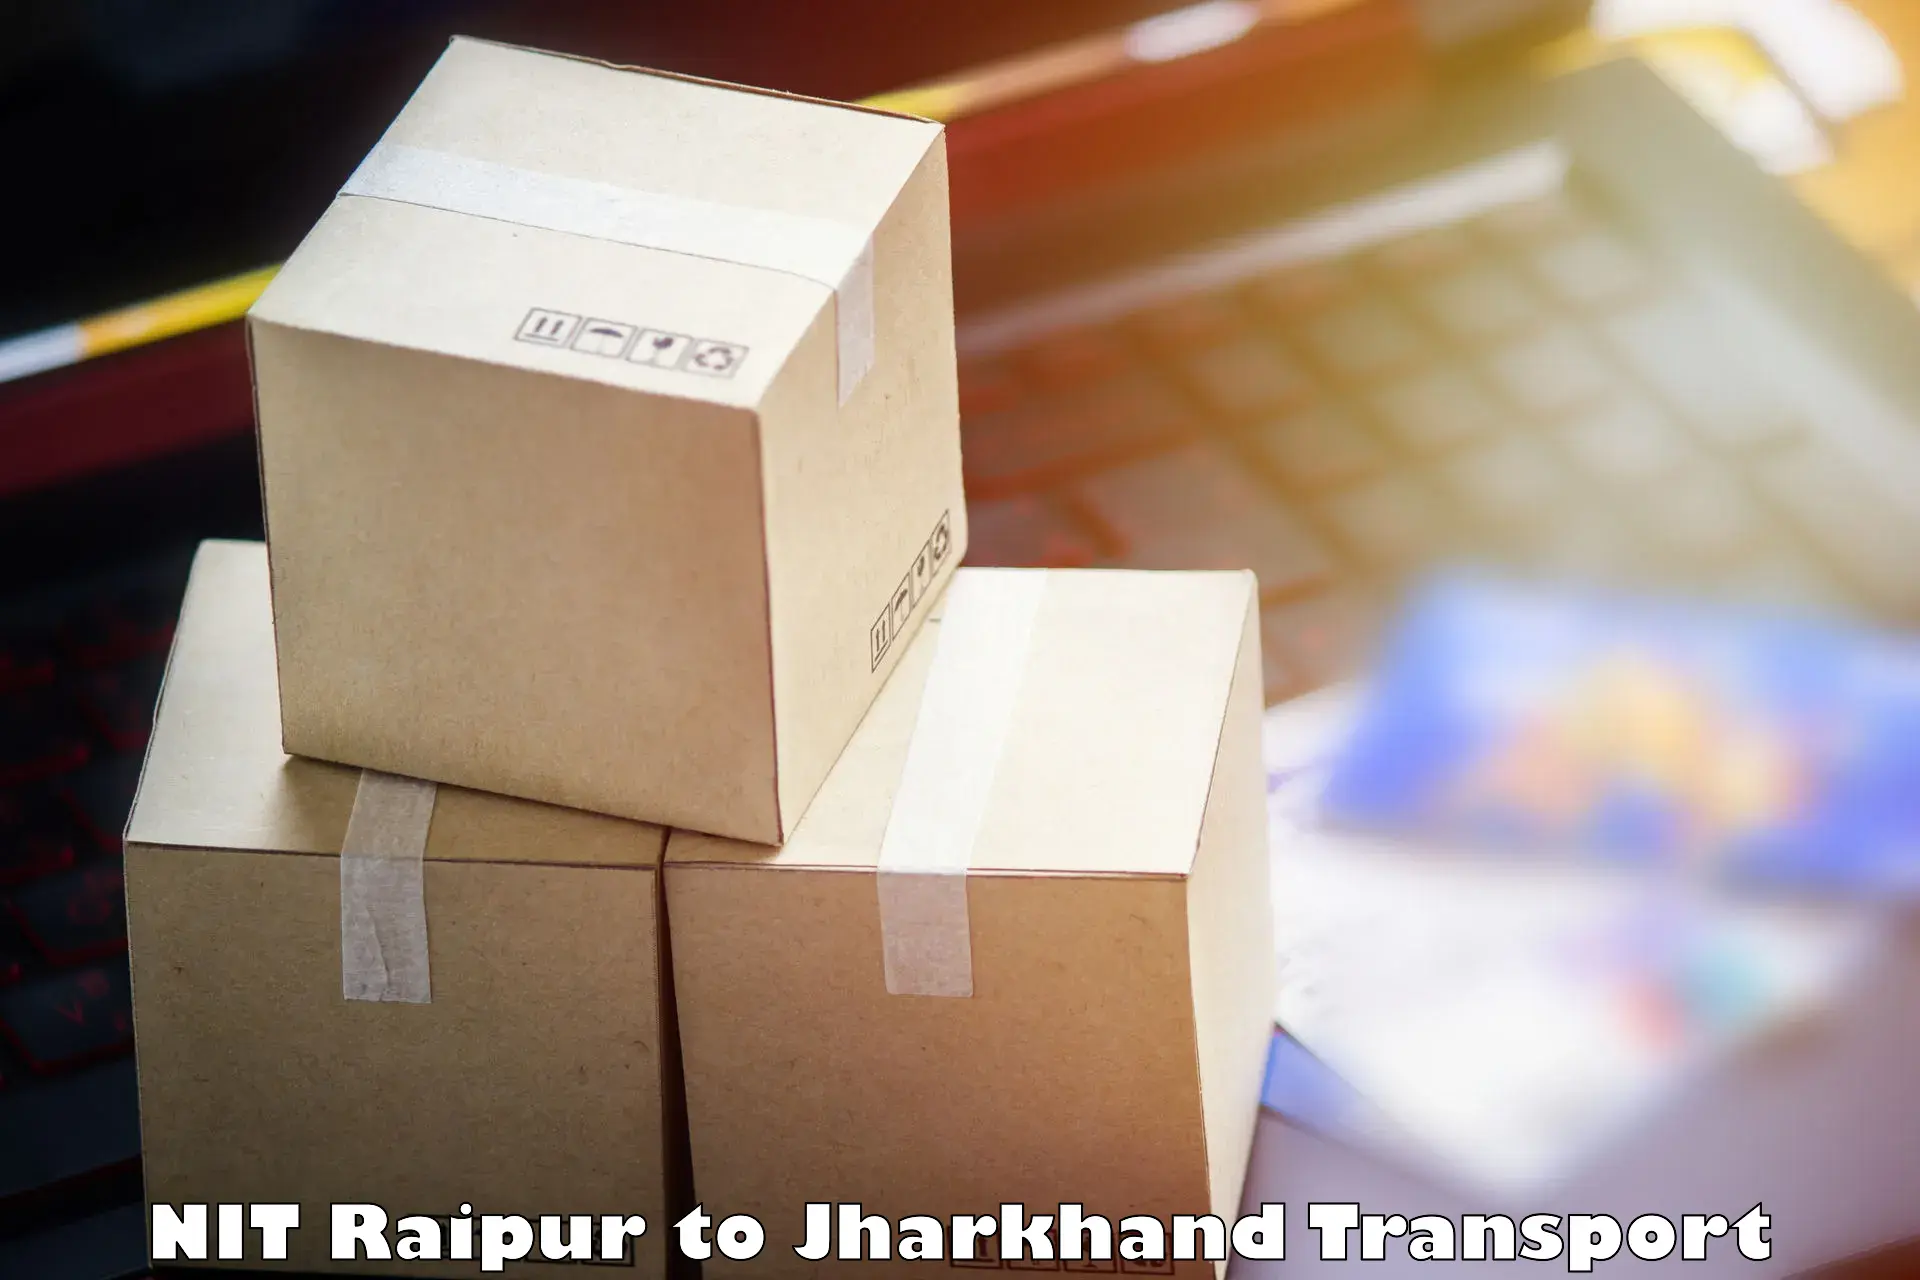 Two wheeler parcel service NIT Raipur to Jamtara